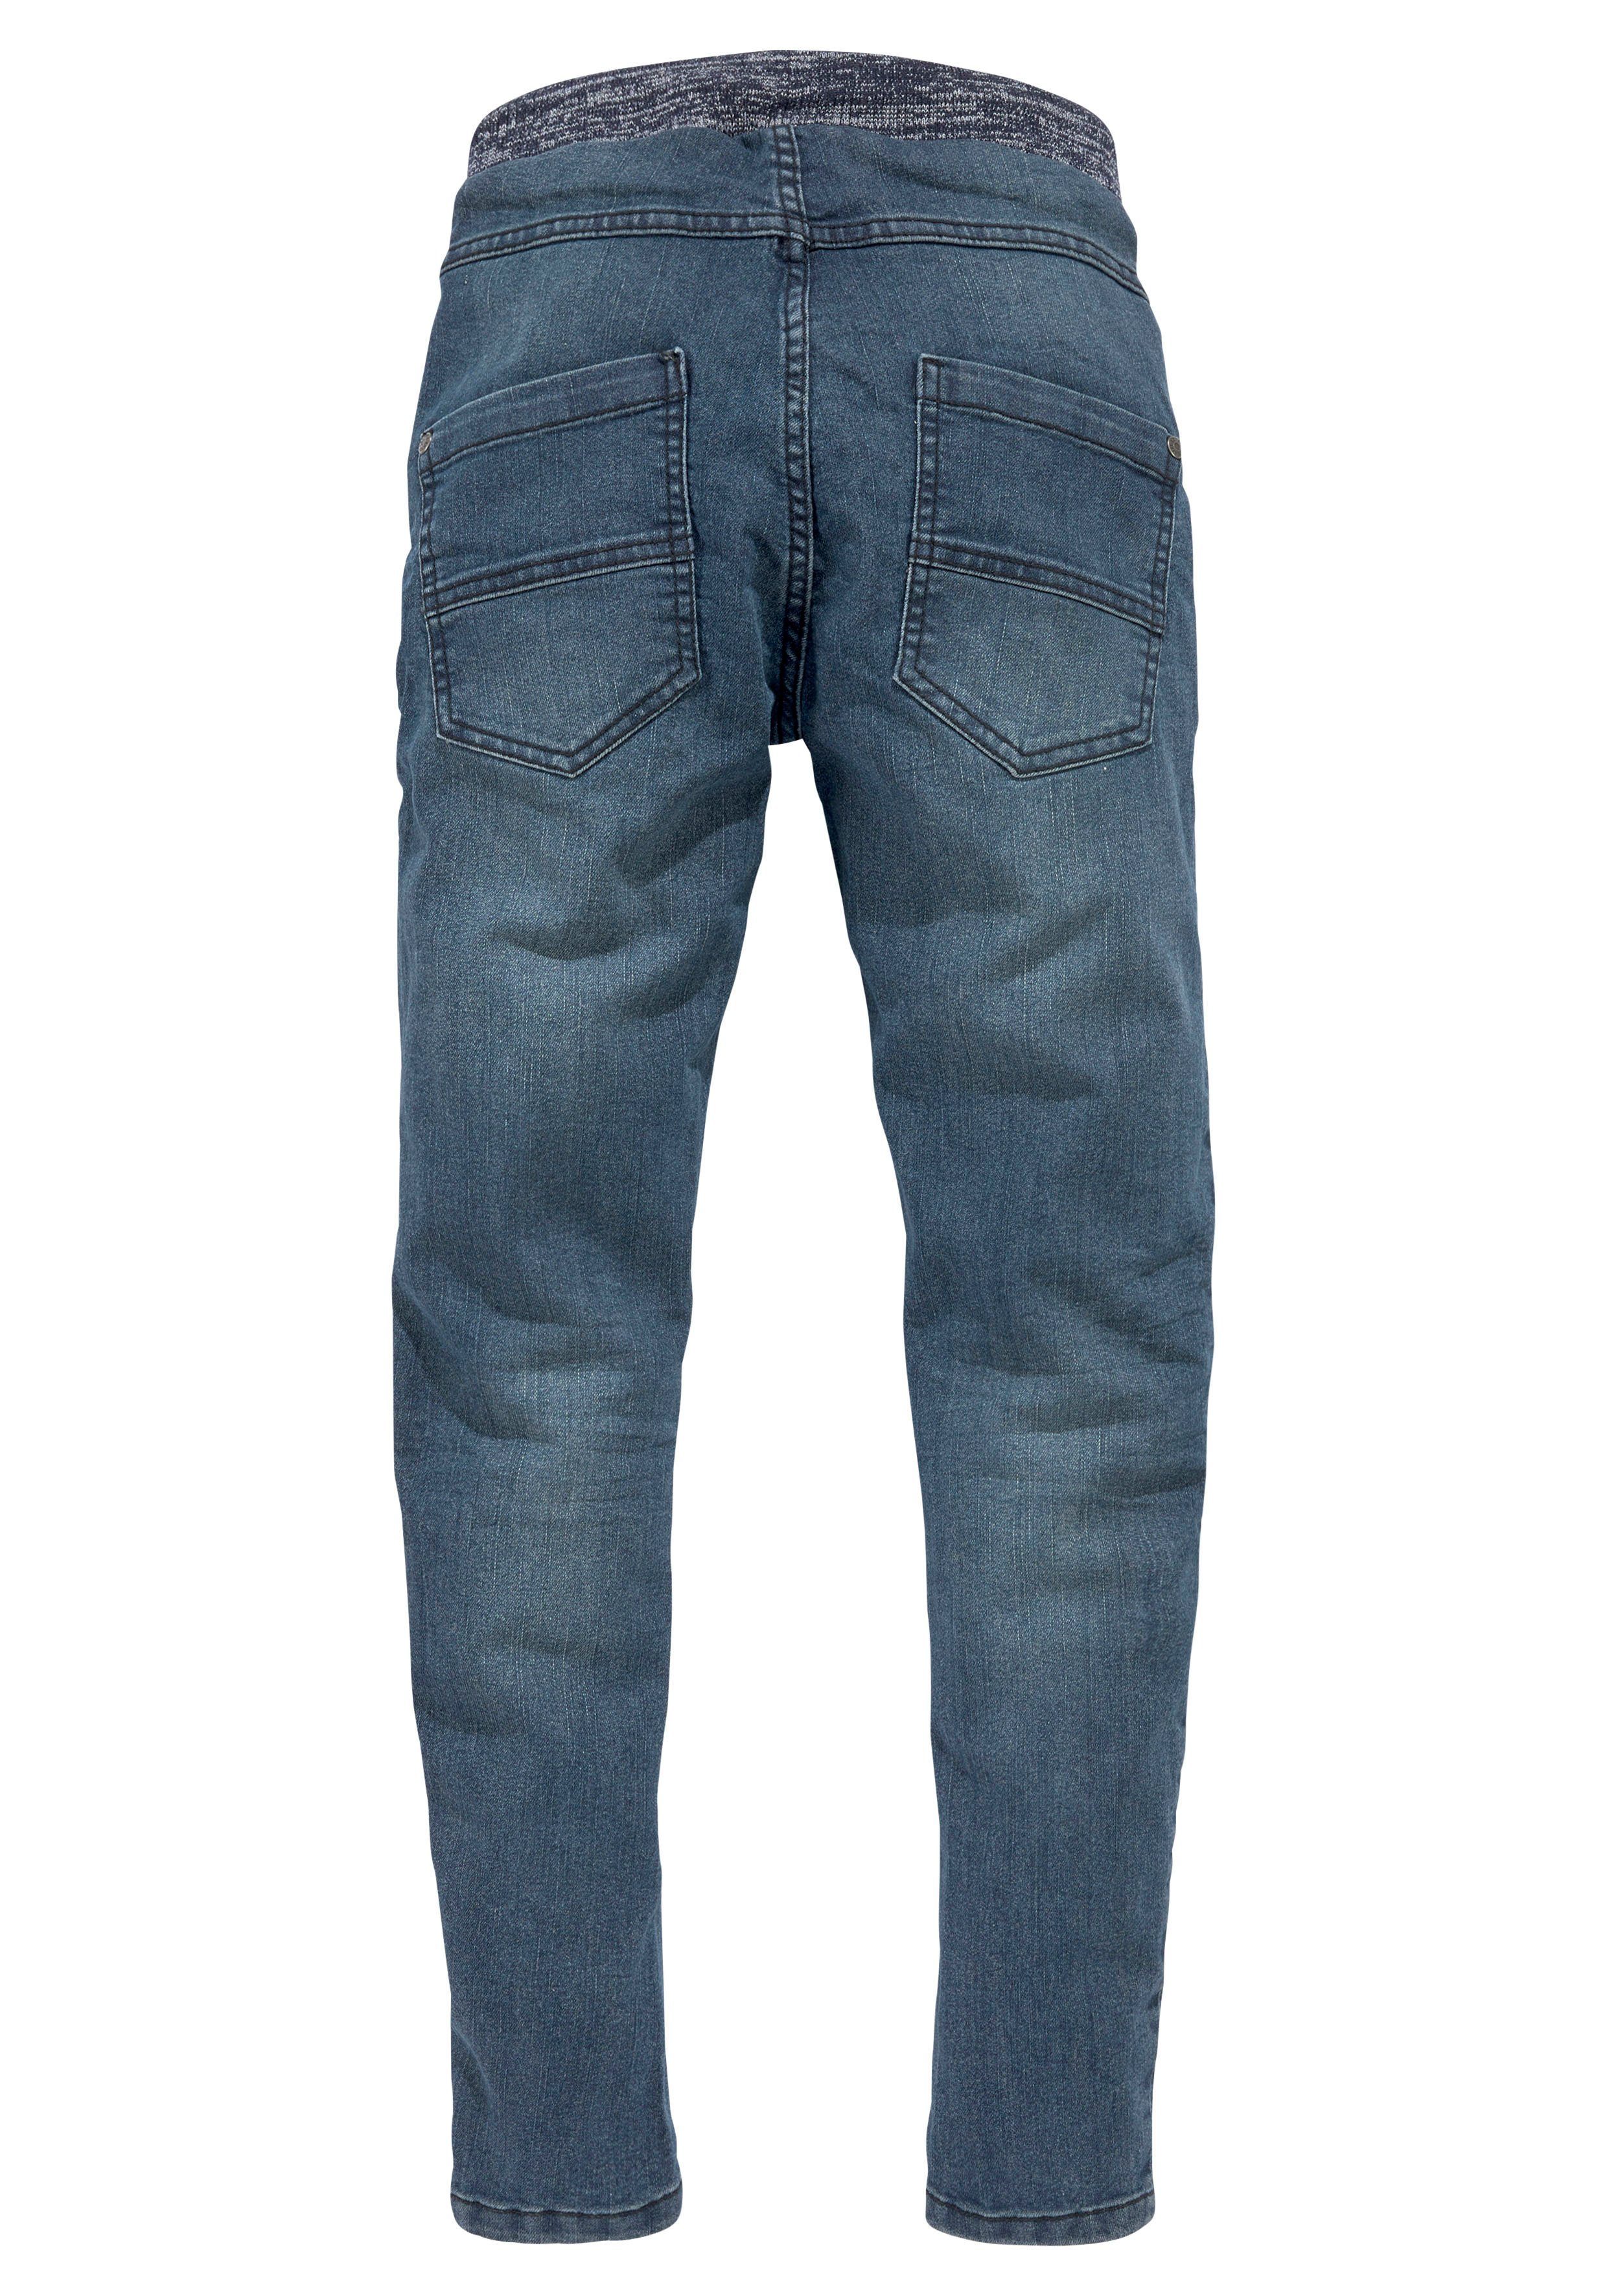 Arizona Stretch-Jeans mit schmalem Beinverlauf mit Rippenbund tollem